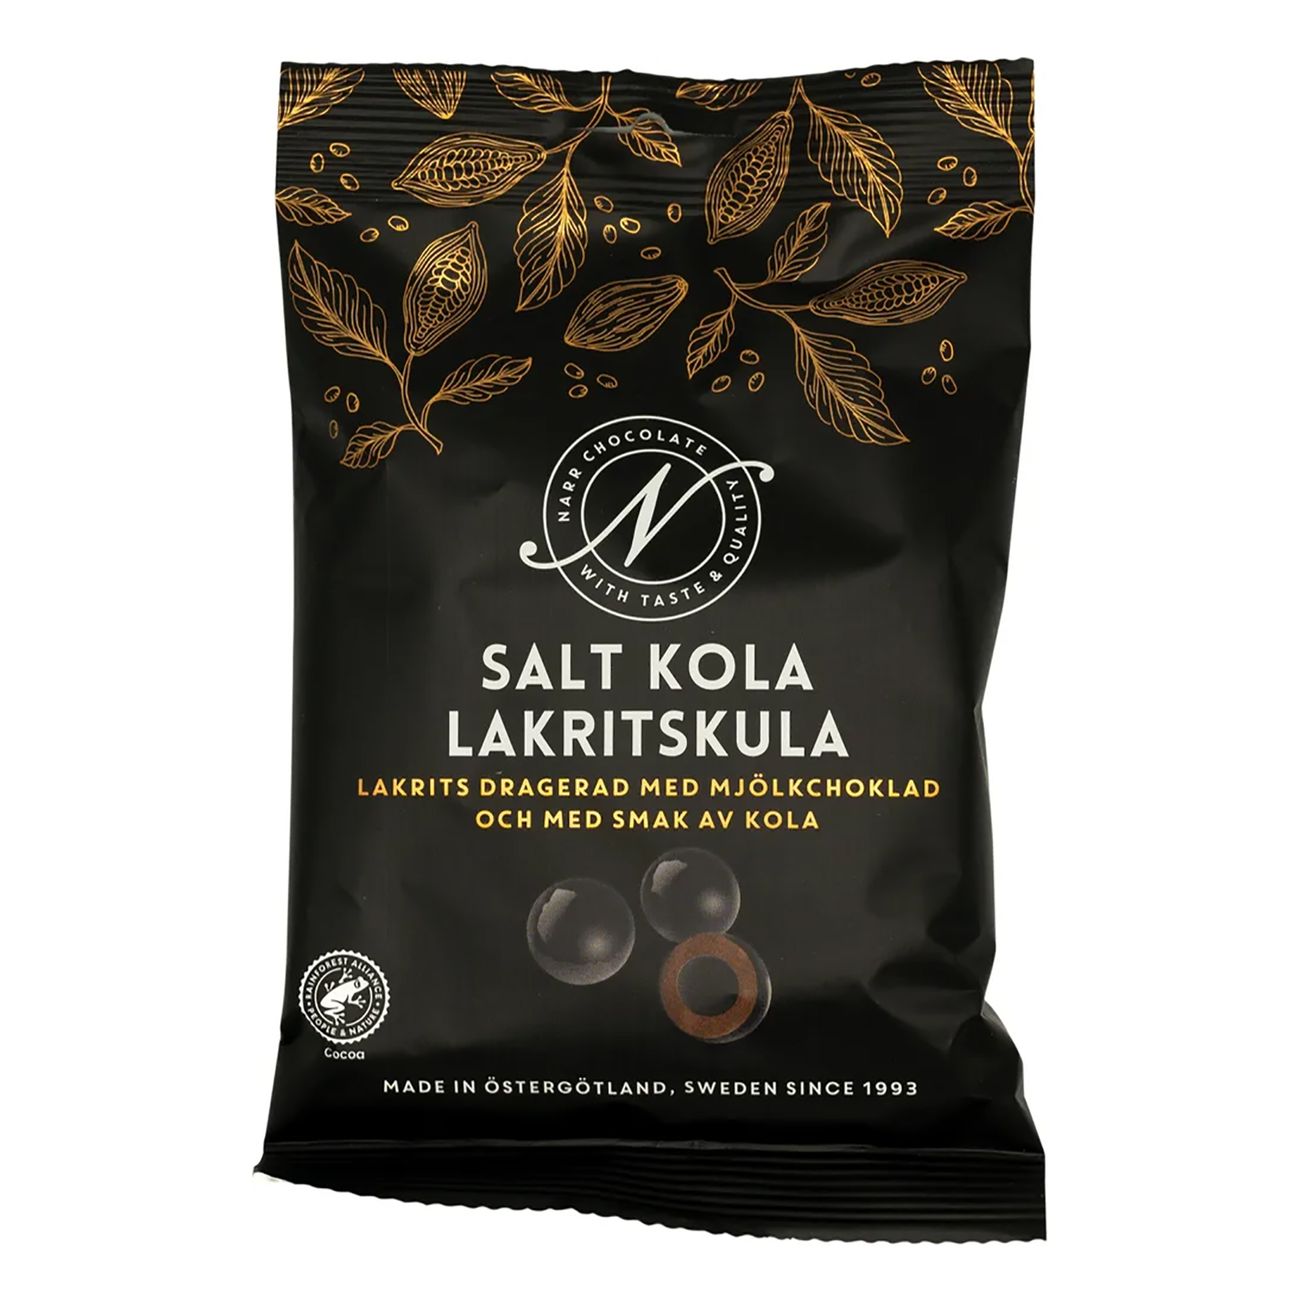 narr-chocolate-salt-kola-lakritskula-92573-1